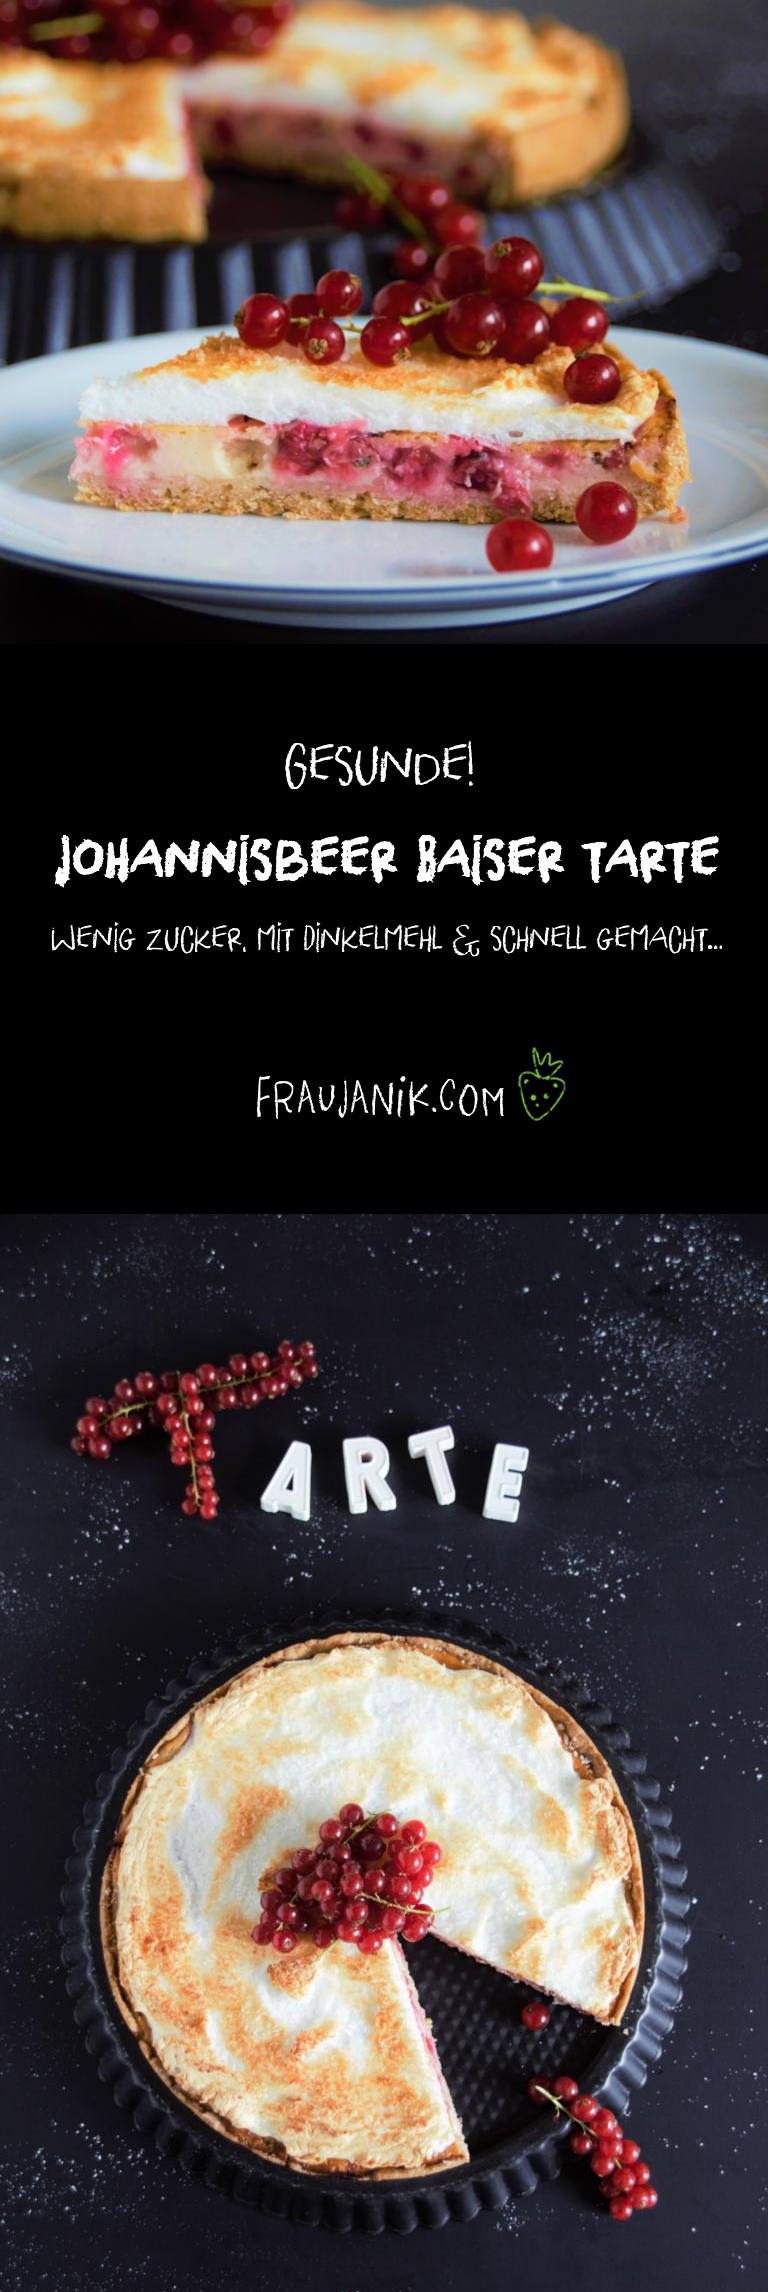 Johannisbeer Baiser Tarte, gesund